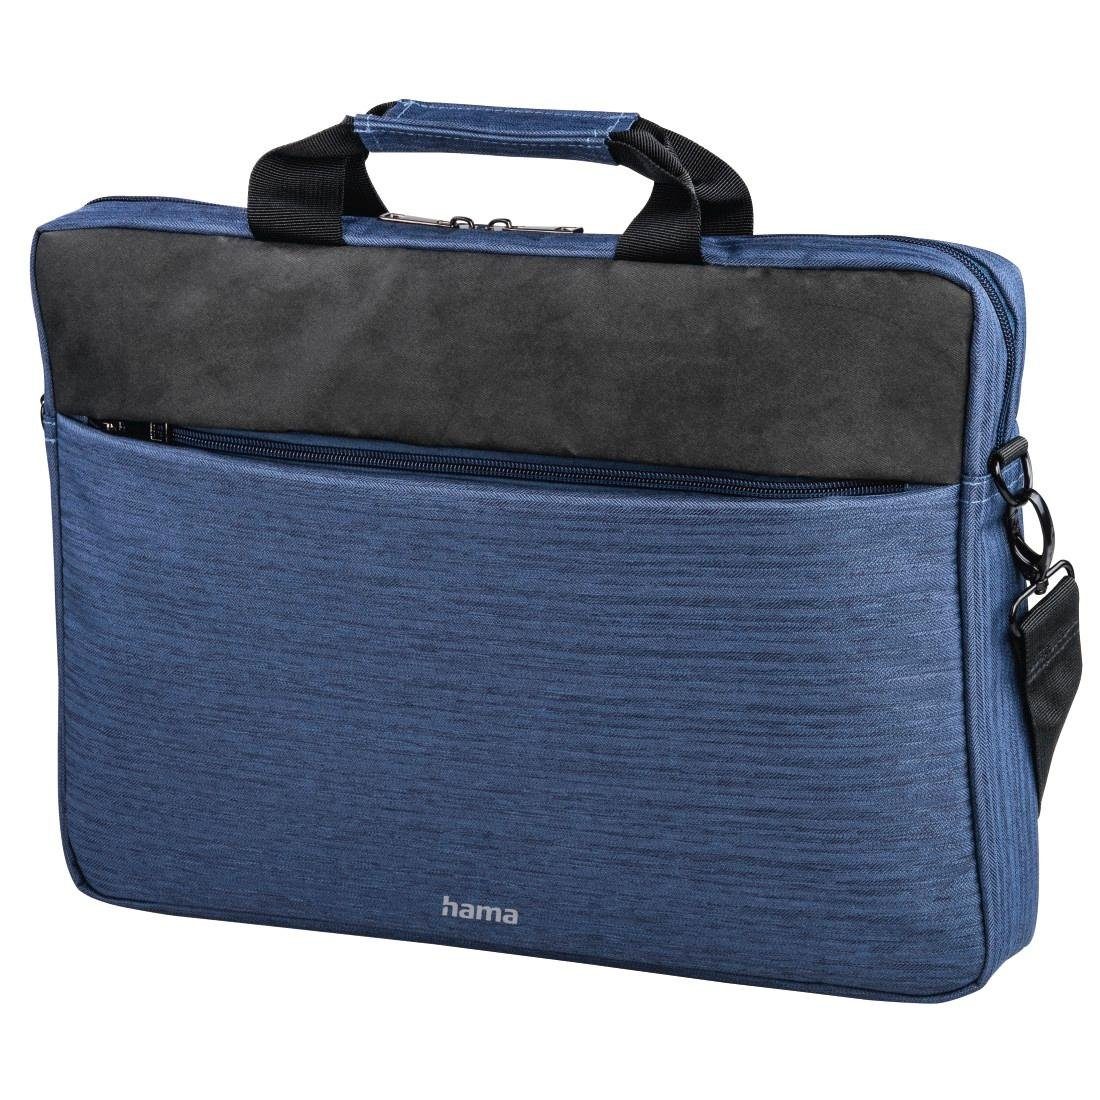 40 Für Displaygröße: dunkelblau 40 bis cm (15,6) "Tayrona", Hama Laptop-Tasche Laptoptasche Notebook-Tasche, (15,6) cm